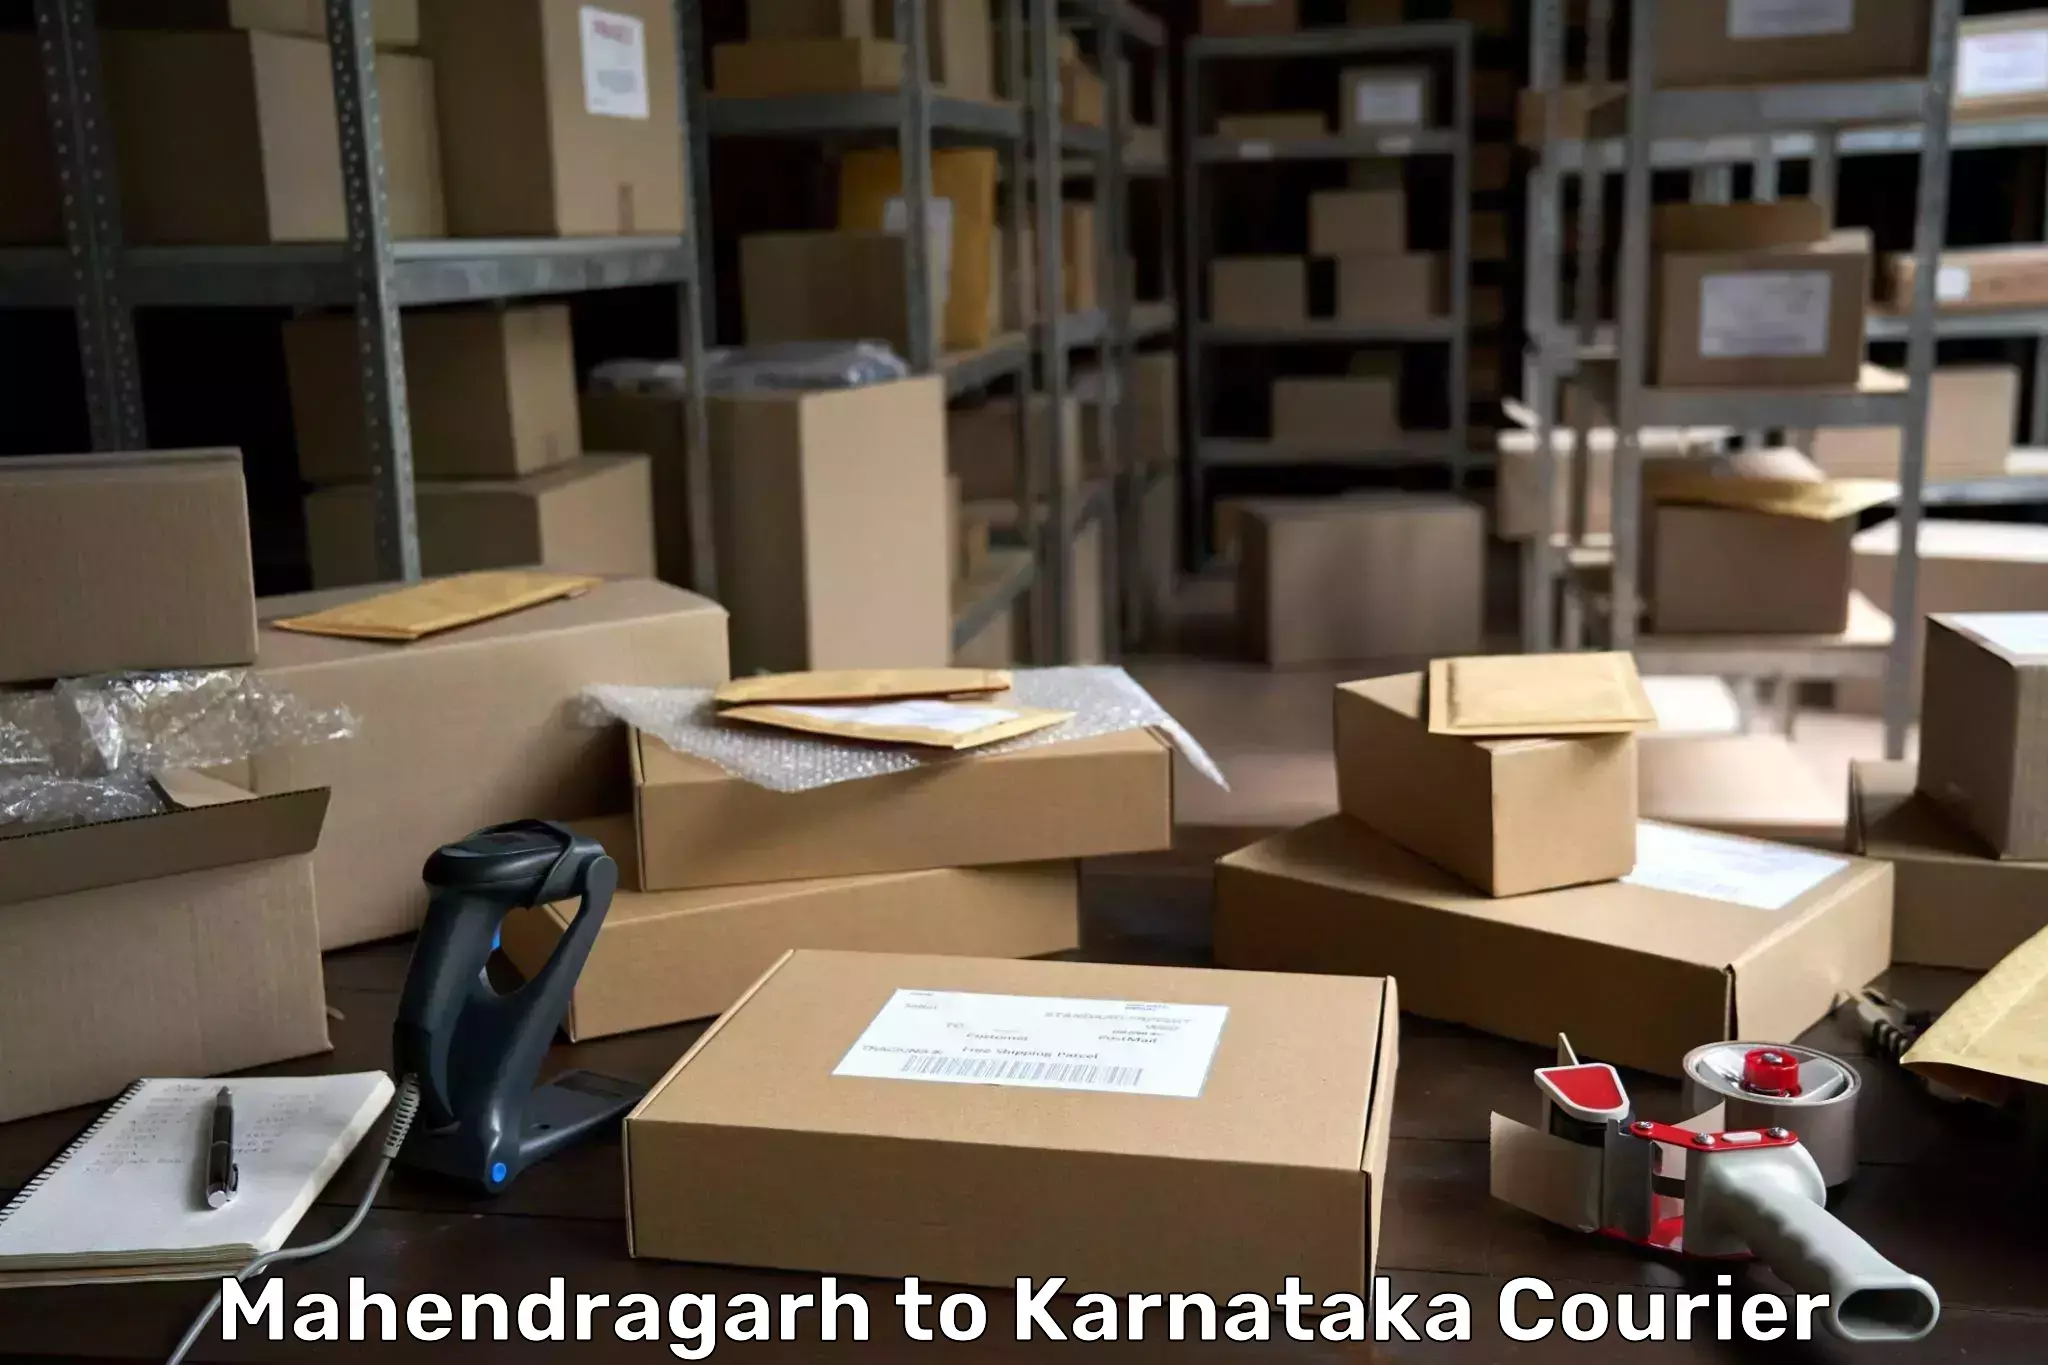 Next day courier Mahendragarh to Karnataka